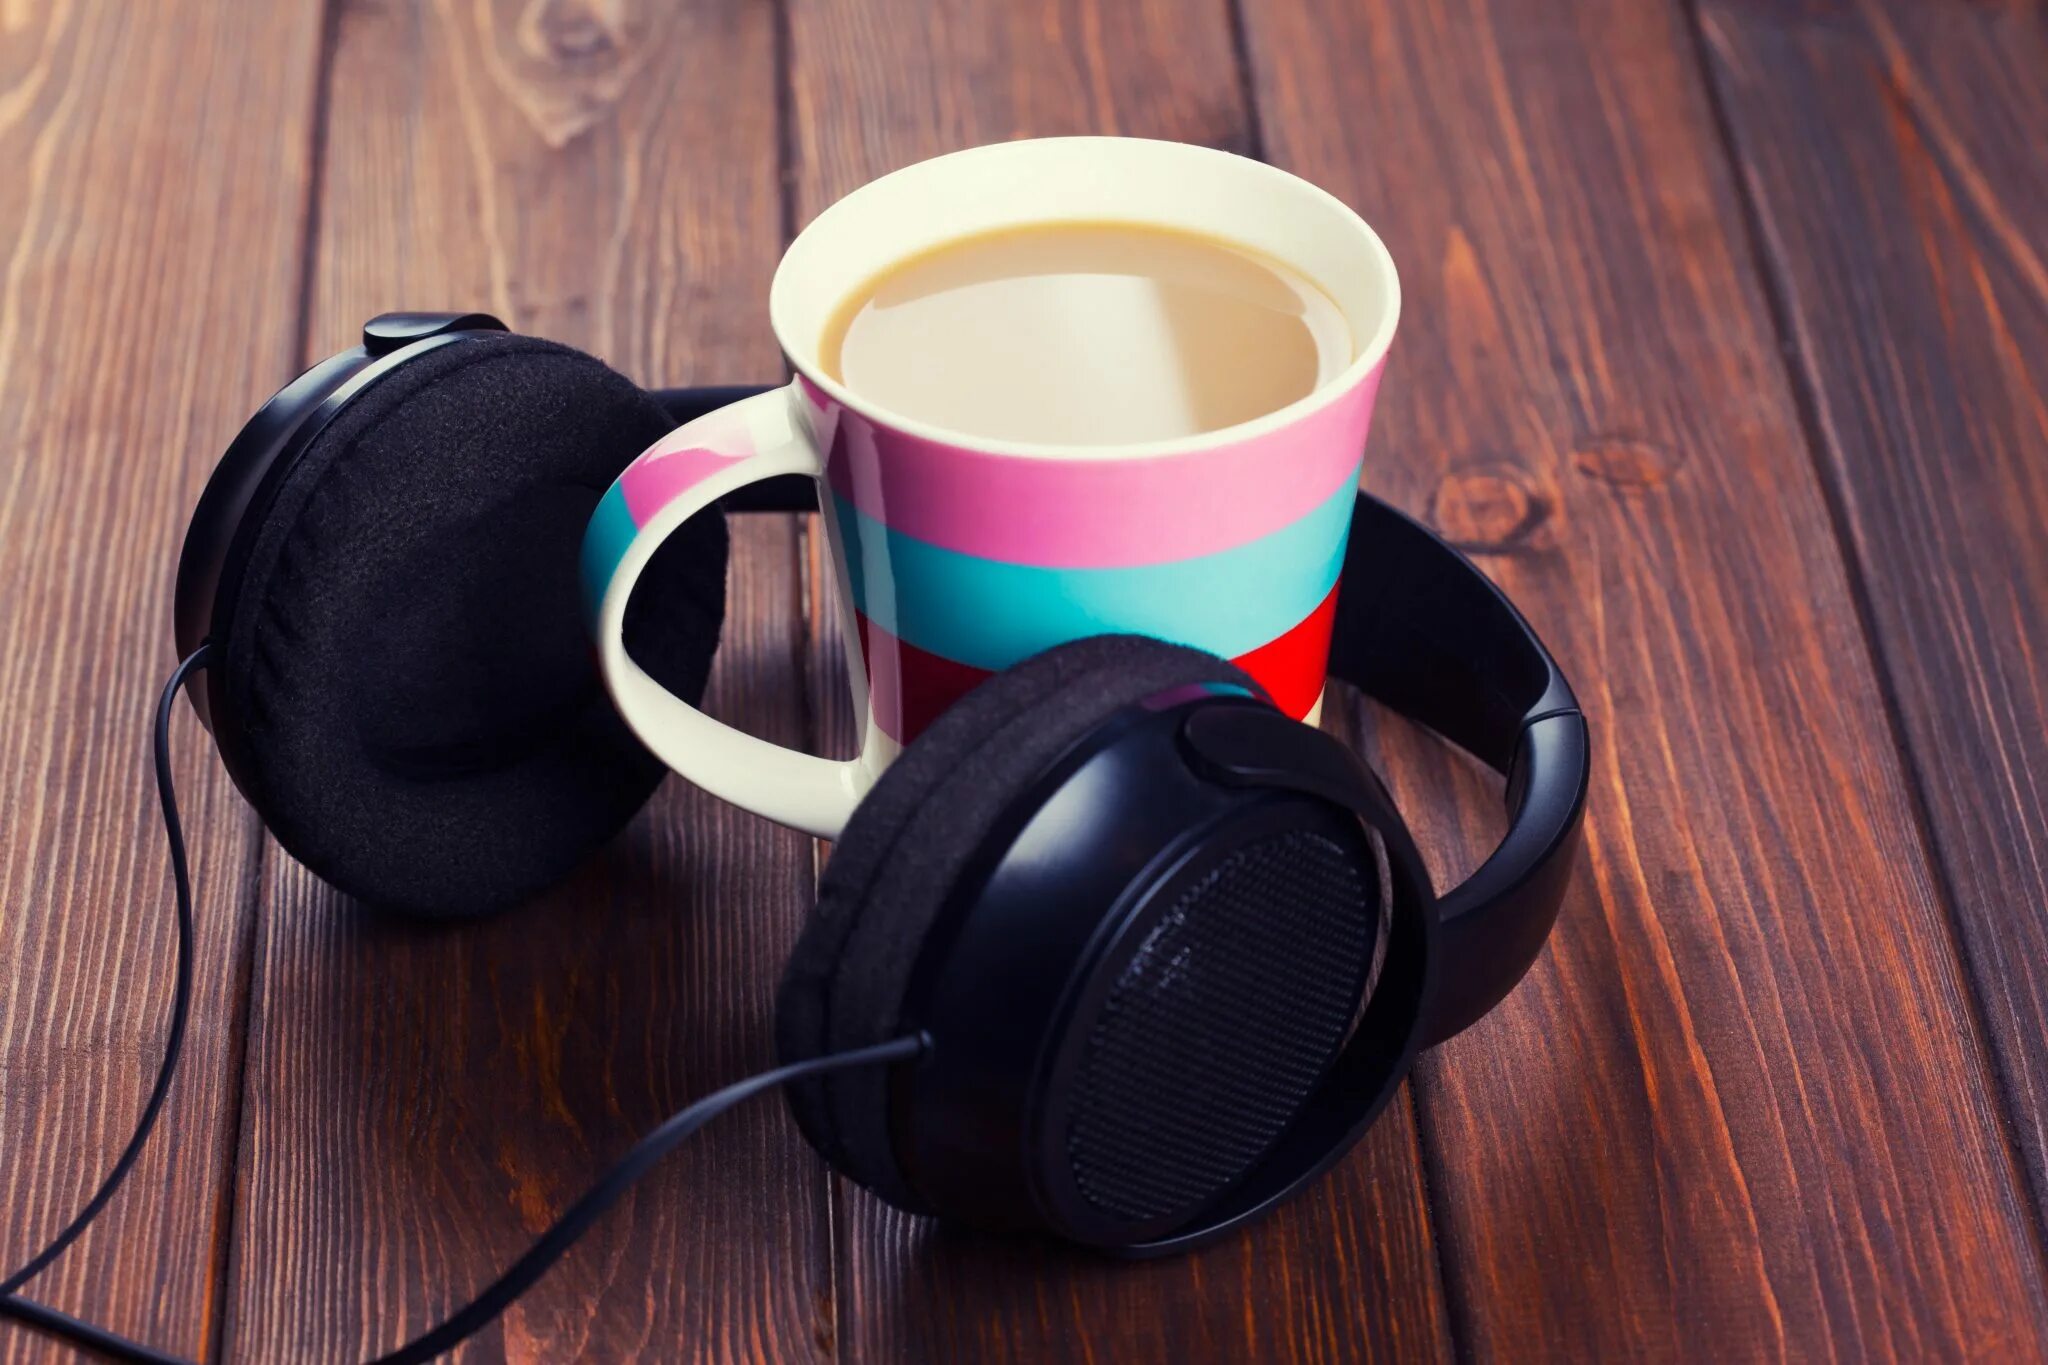 Хорошая утренняя музыка слушать. Кофе и наушники. Чашки для наушников. Кофе с наушниками. Наушники утро.